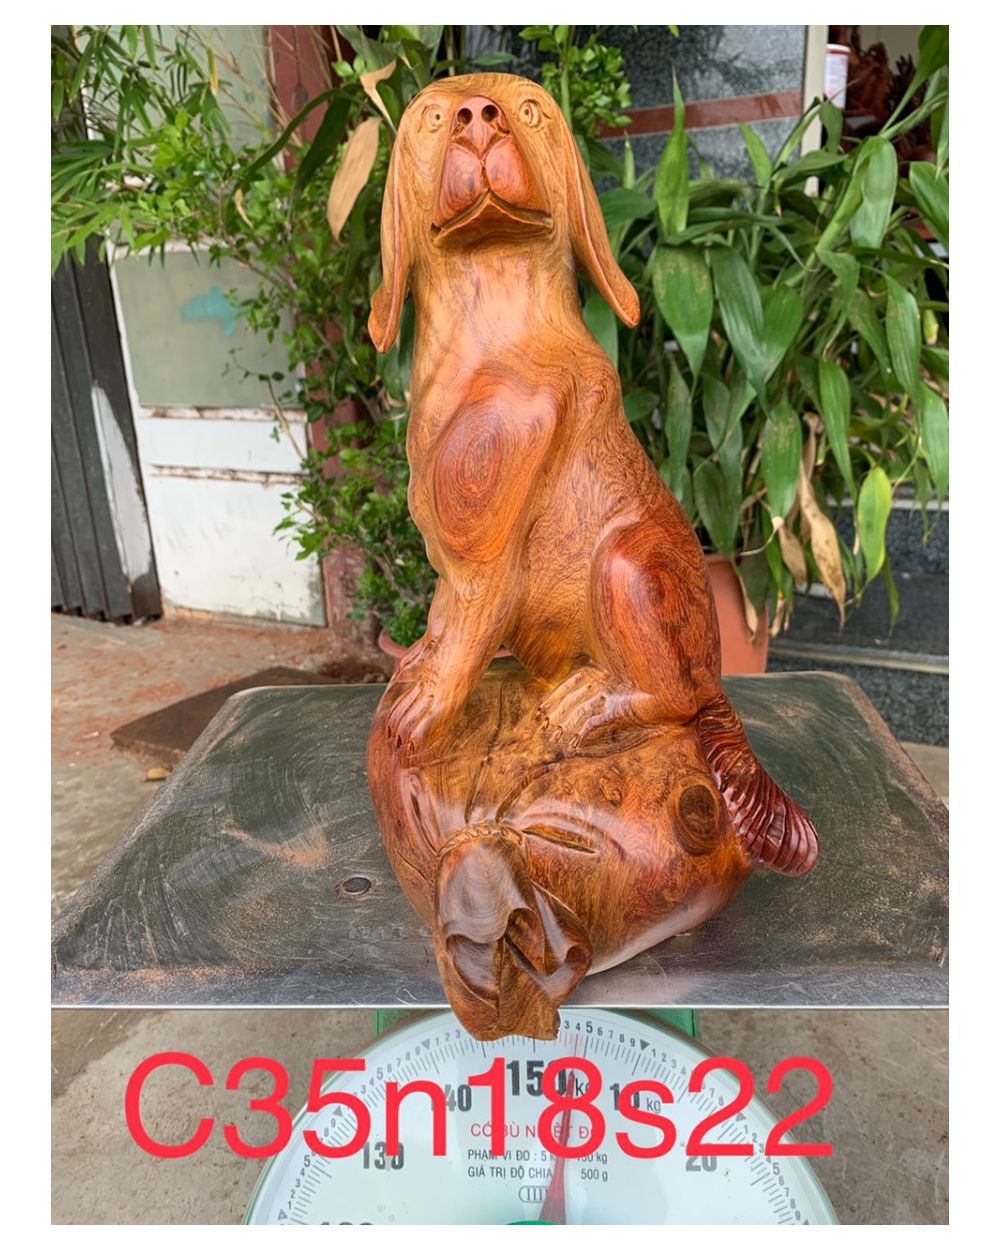 Tượng Gỗ Linh Vật Phong Thủy Con Chó: Khám phá sức mạnh của phong thủy với tượng gỗ linh vật con chó, được tạo ra từ những người thợ gỗ tài năng. Tượng được chạm khắc tỉ mỉ, mang lại vẻ đẹp tinh tế cho không gian của bạn. Hãy đến và khám phá ngay!